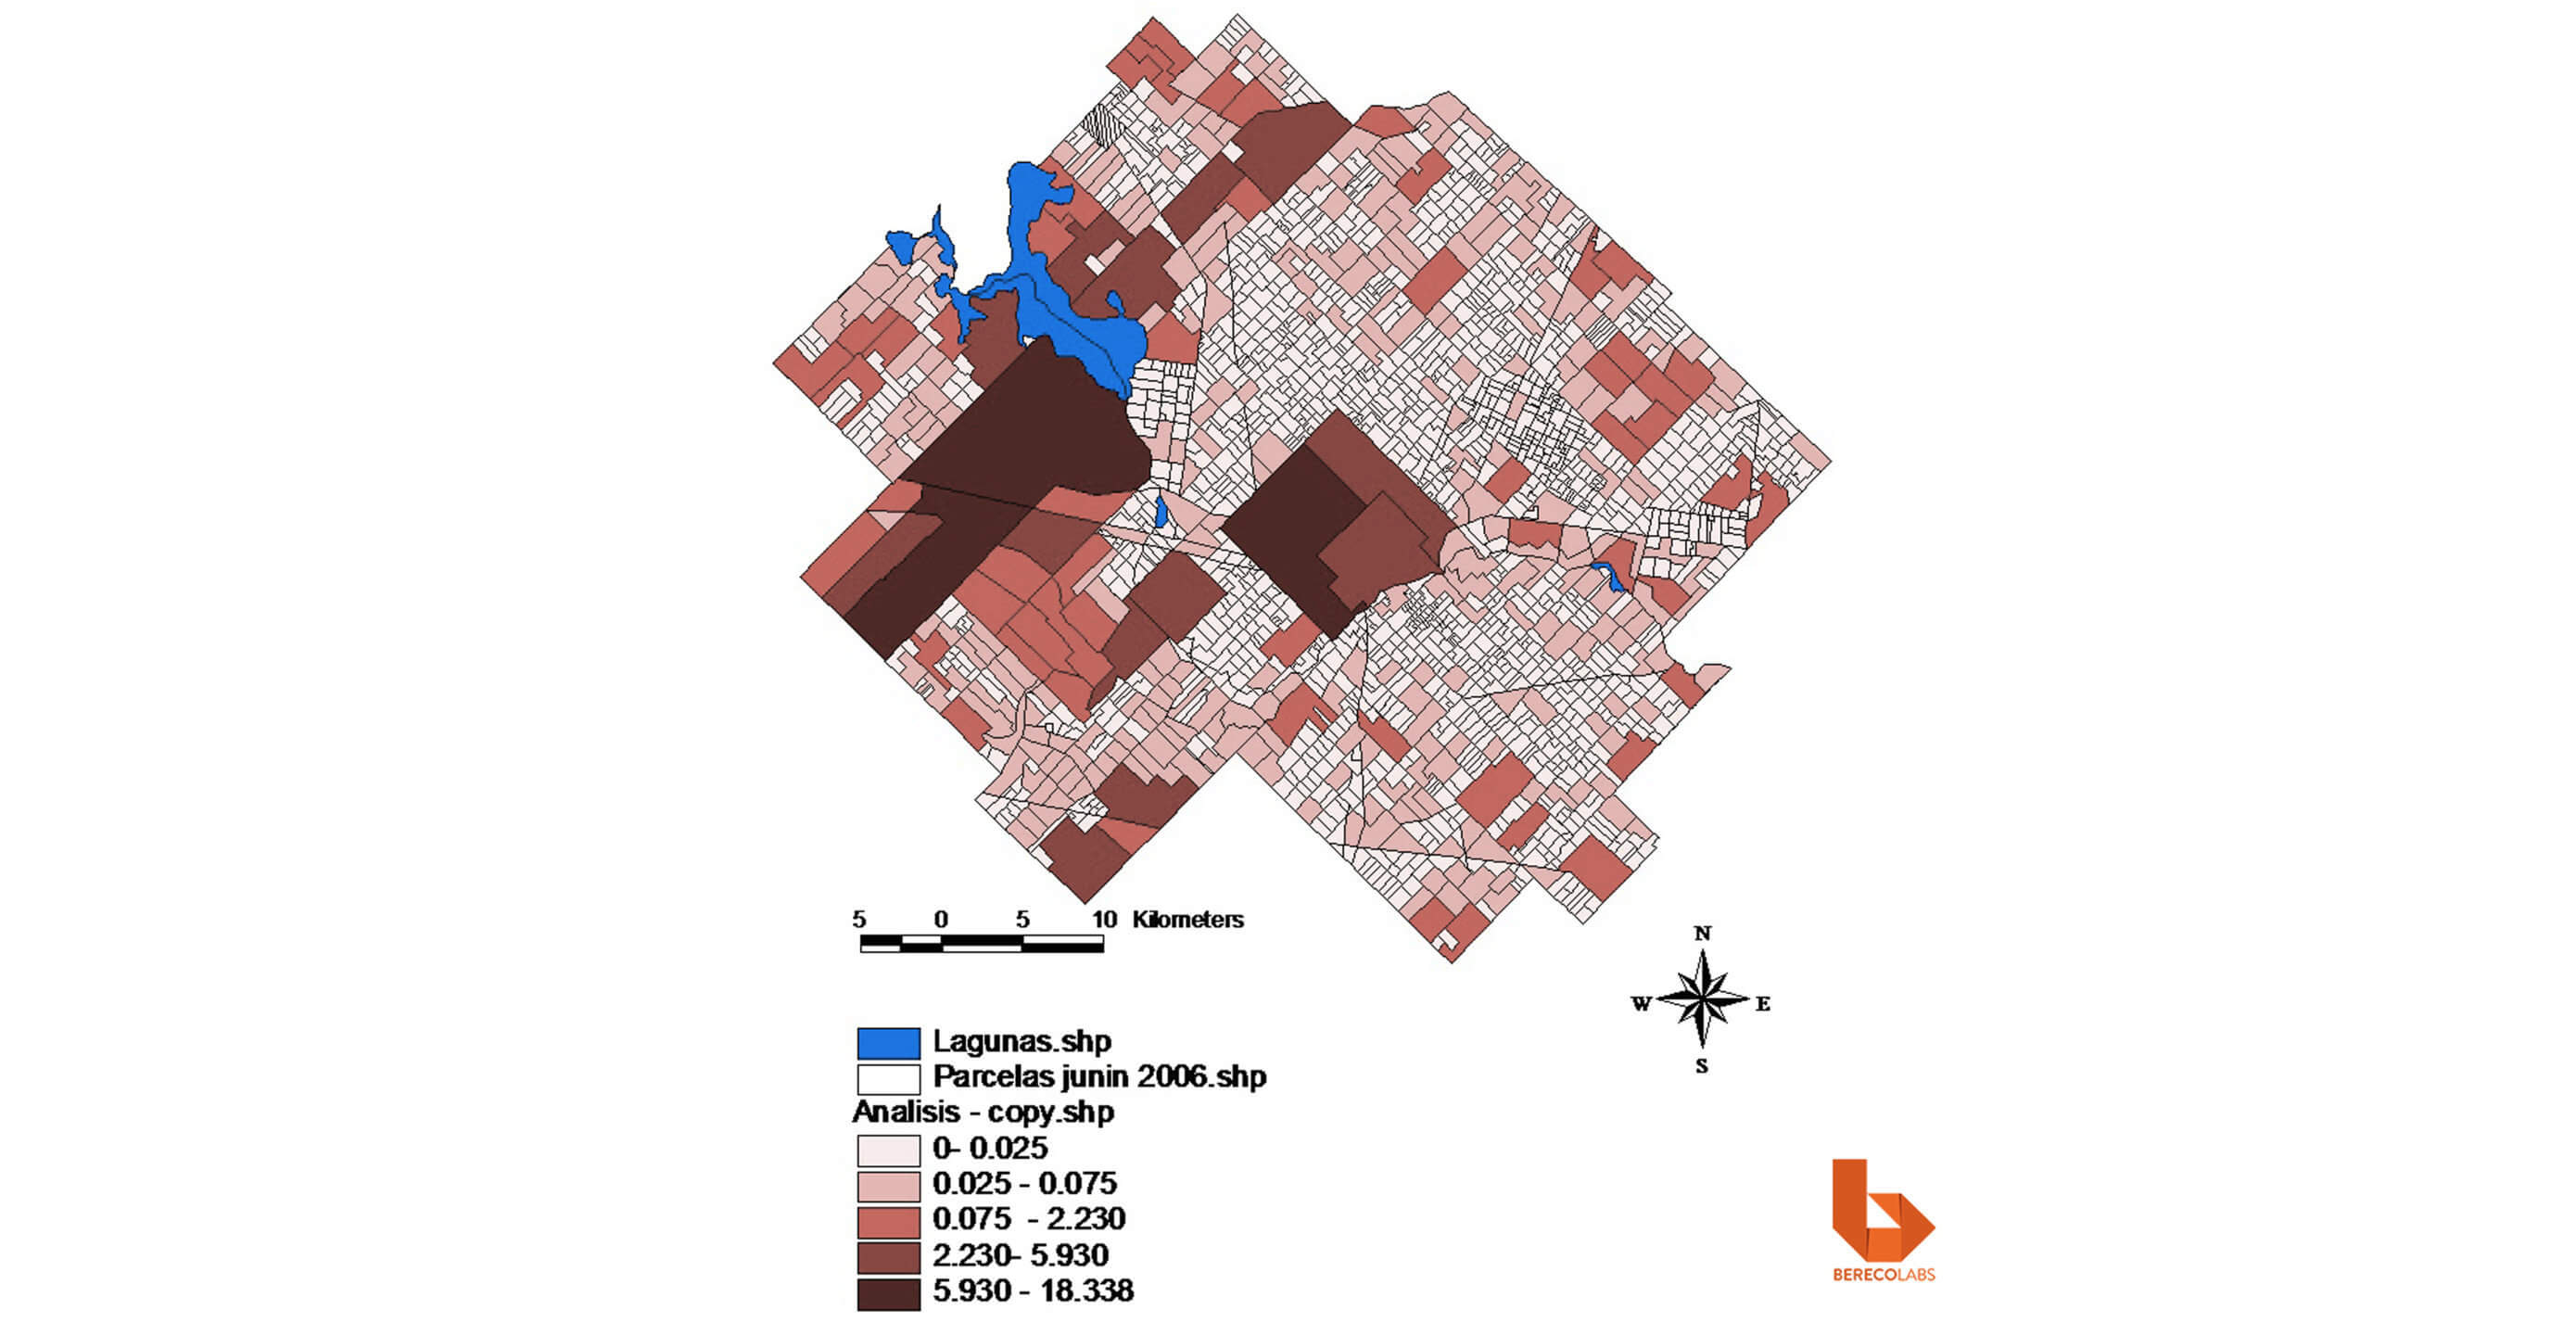 Tuits georreferenciados sobre el estado del transporte público y privado en la ciudad de Buenos Aires